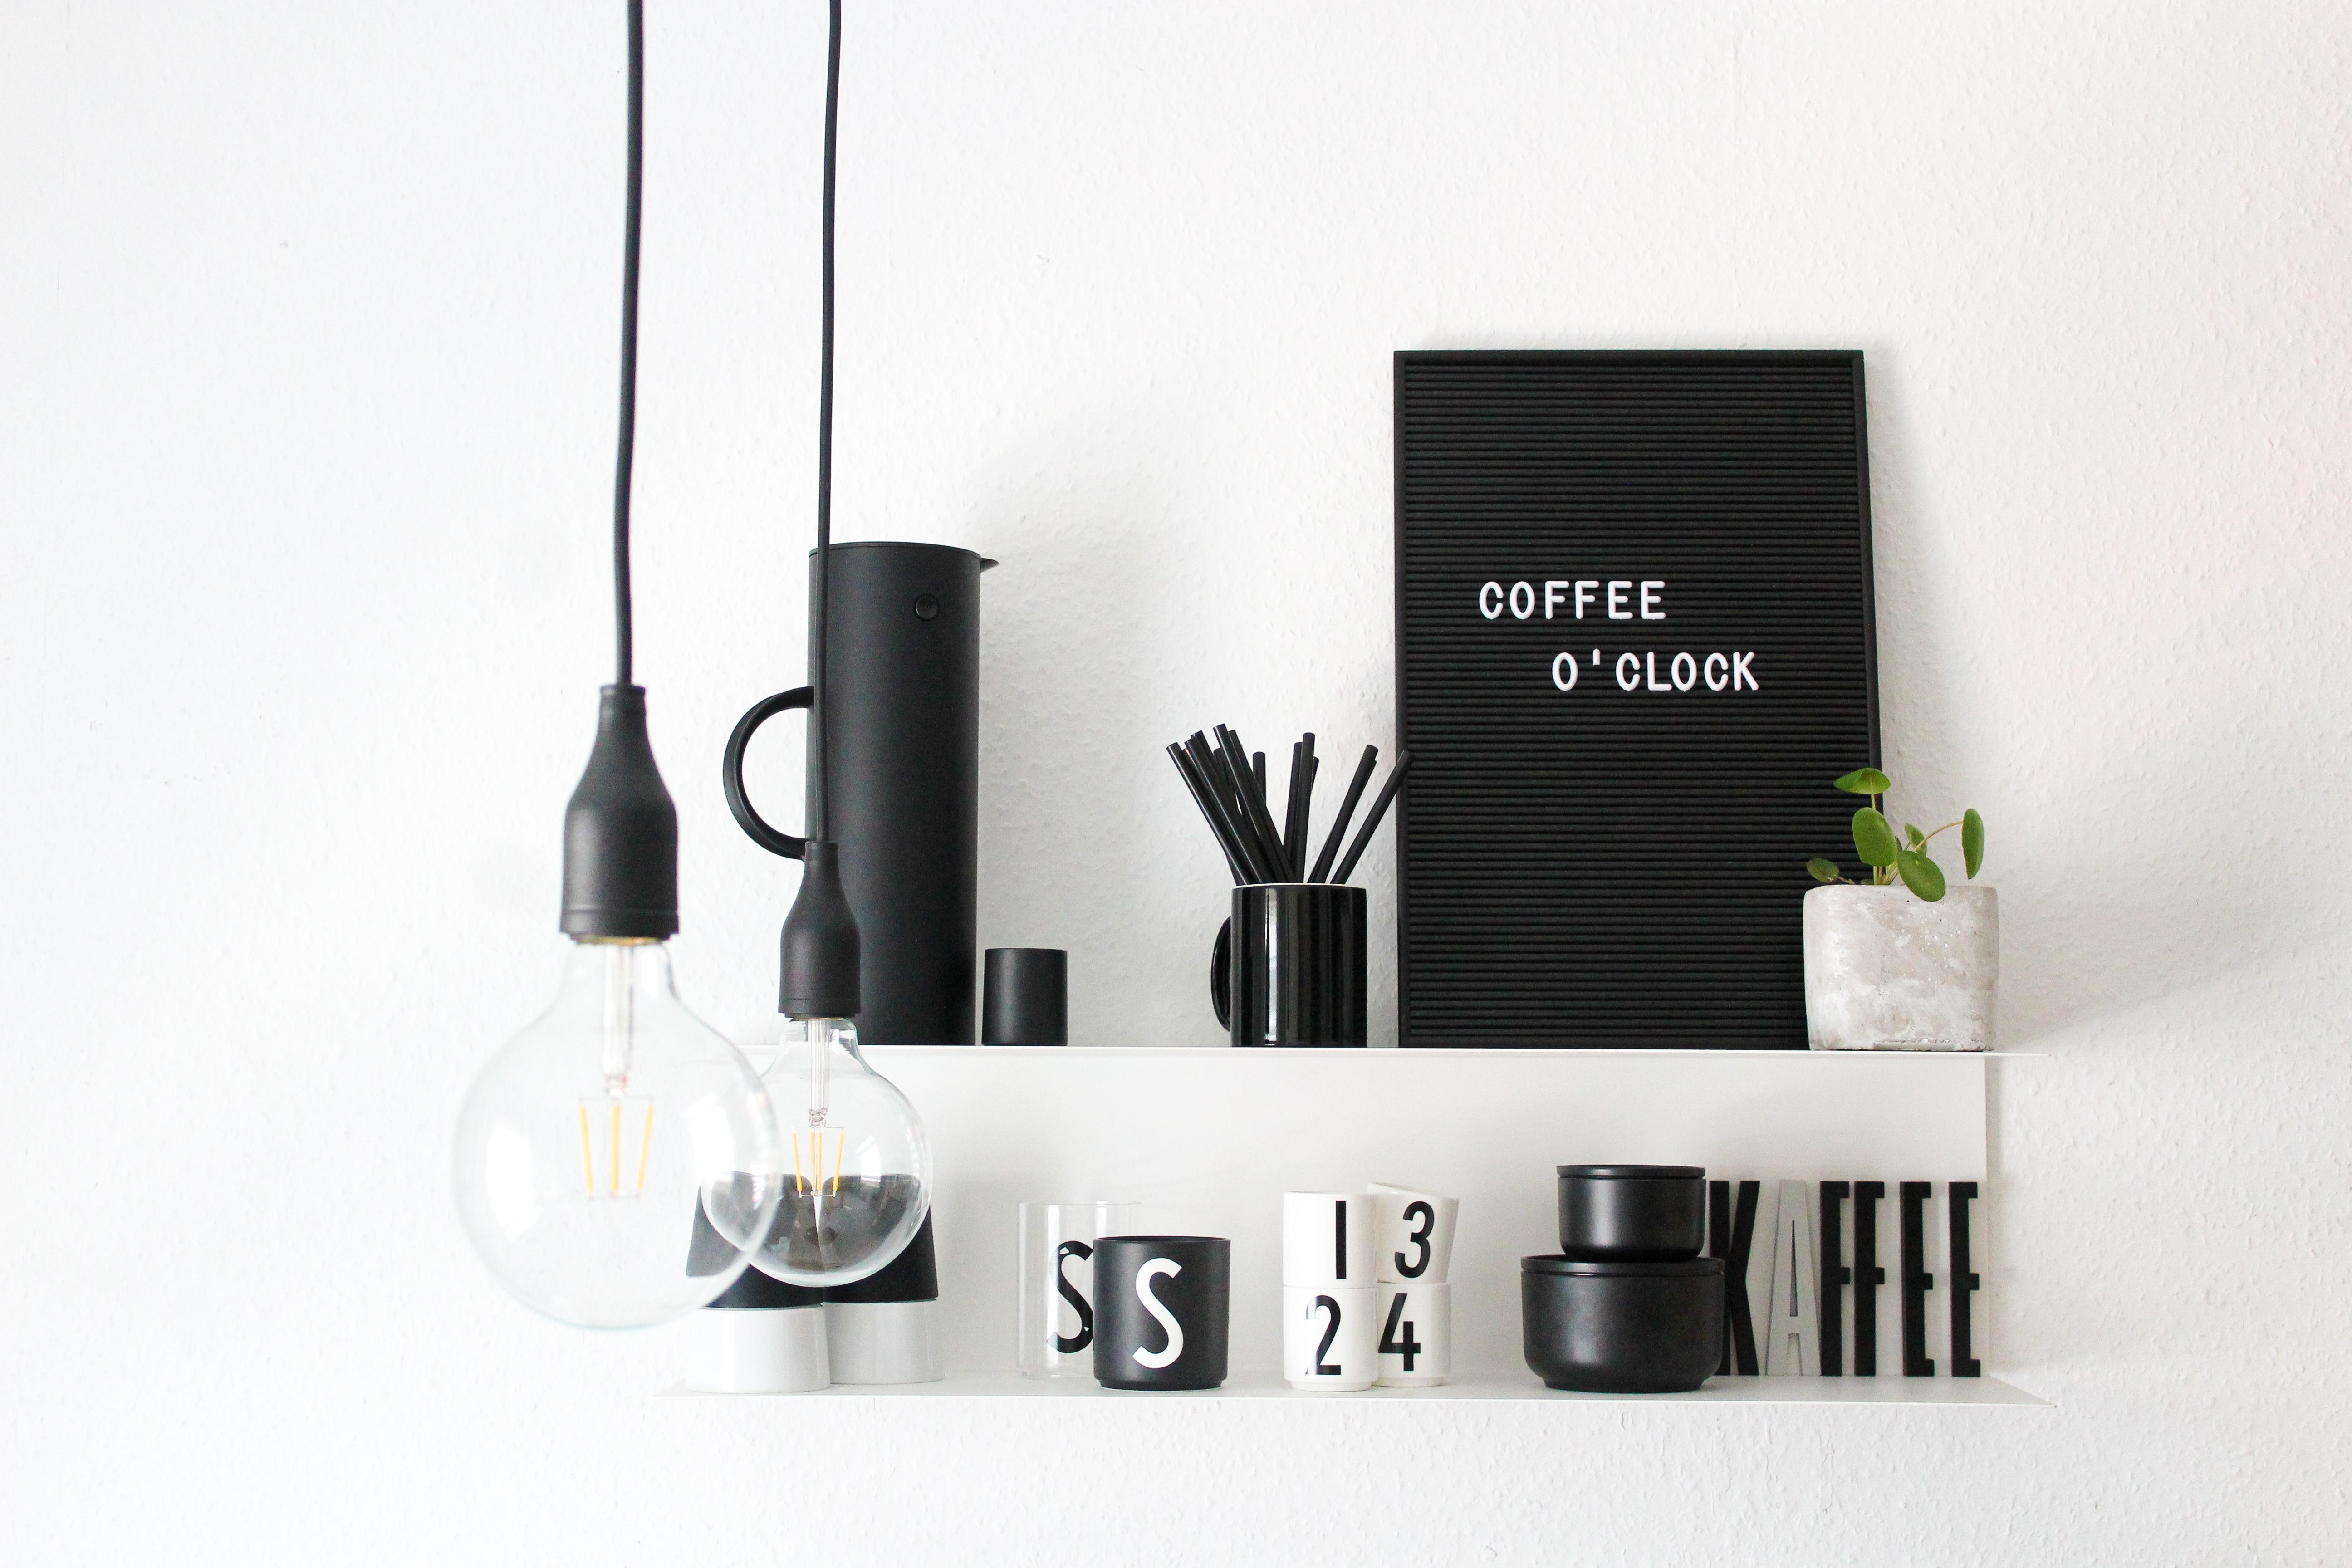 Ohne Kaffee geht nichts..
#coffeelover #coffeecorner #kitchendetails 